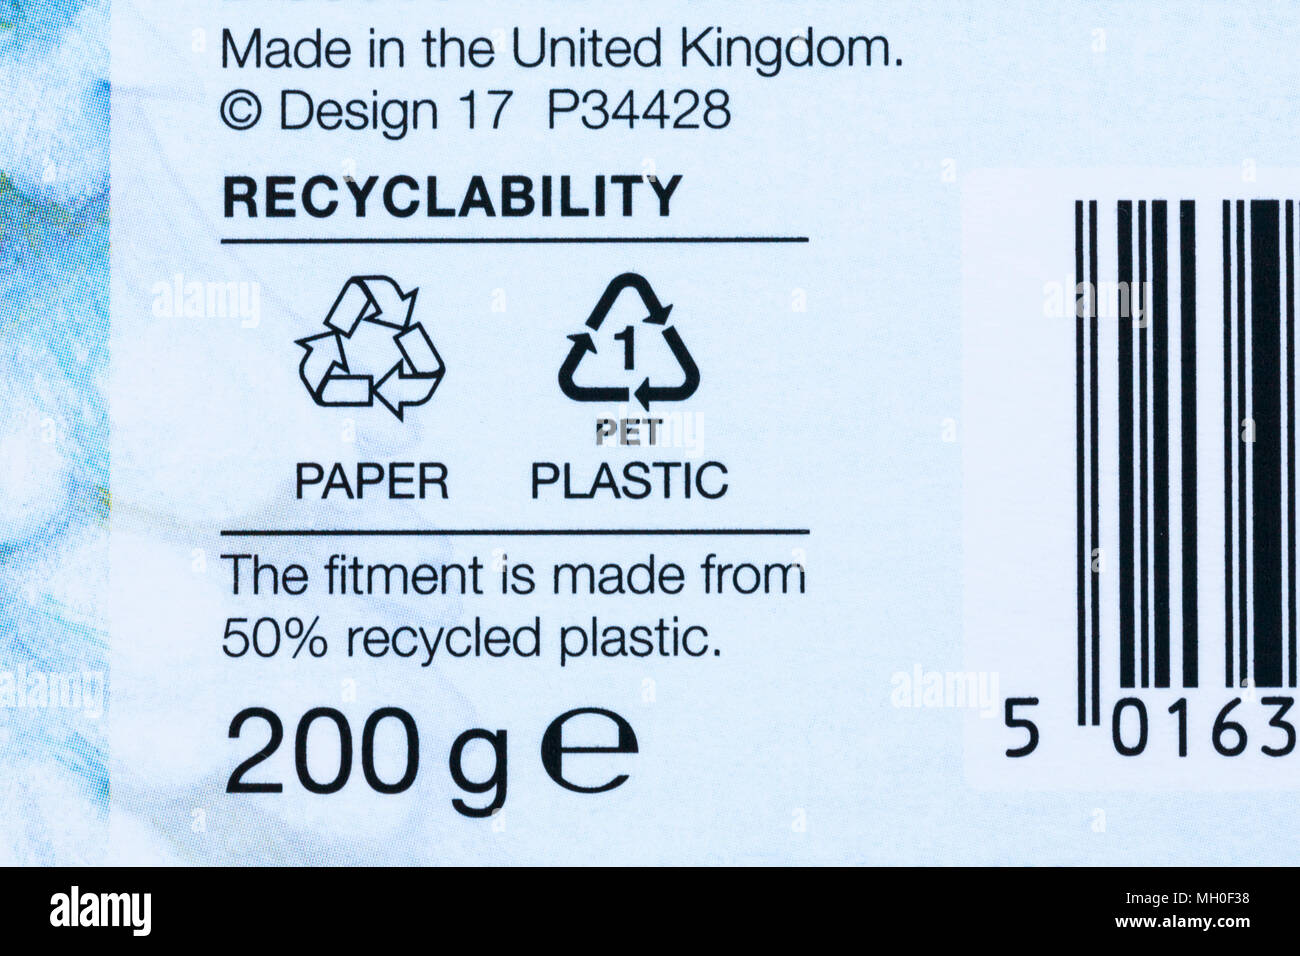 Recycling-Informationen auf der Verpackung – die Ausrüstung besteht zu 50 % aus recyceltem Kunststoff, hergestellt in Großbritannien – Entsorgung Recycling Recycling Recycling Logo-Symbol Stockfoto